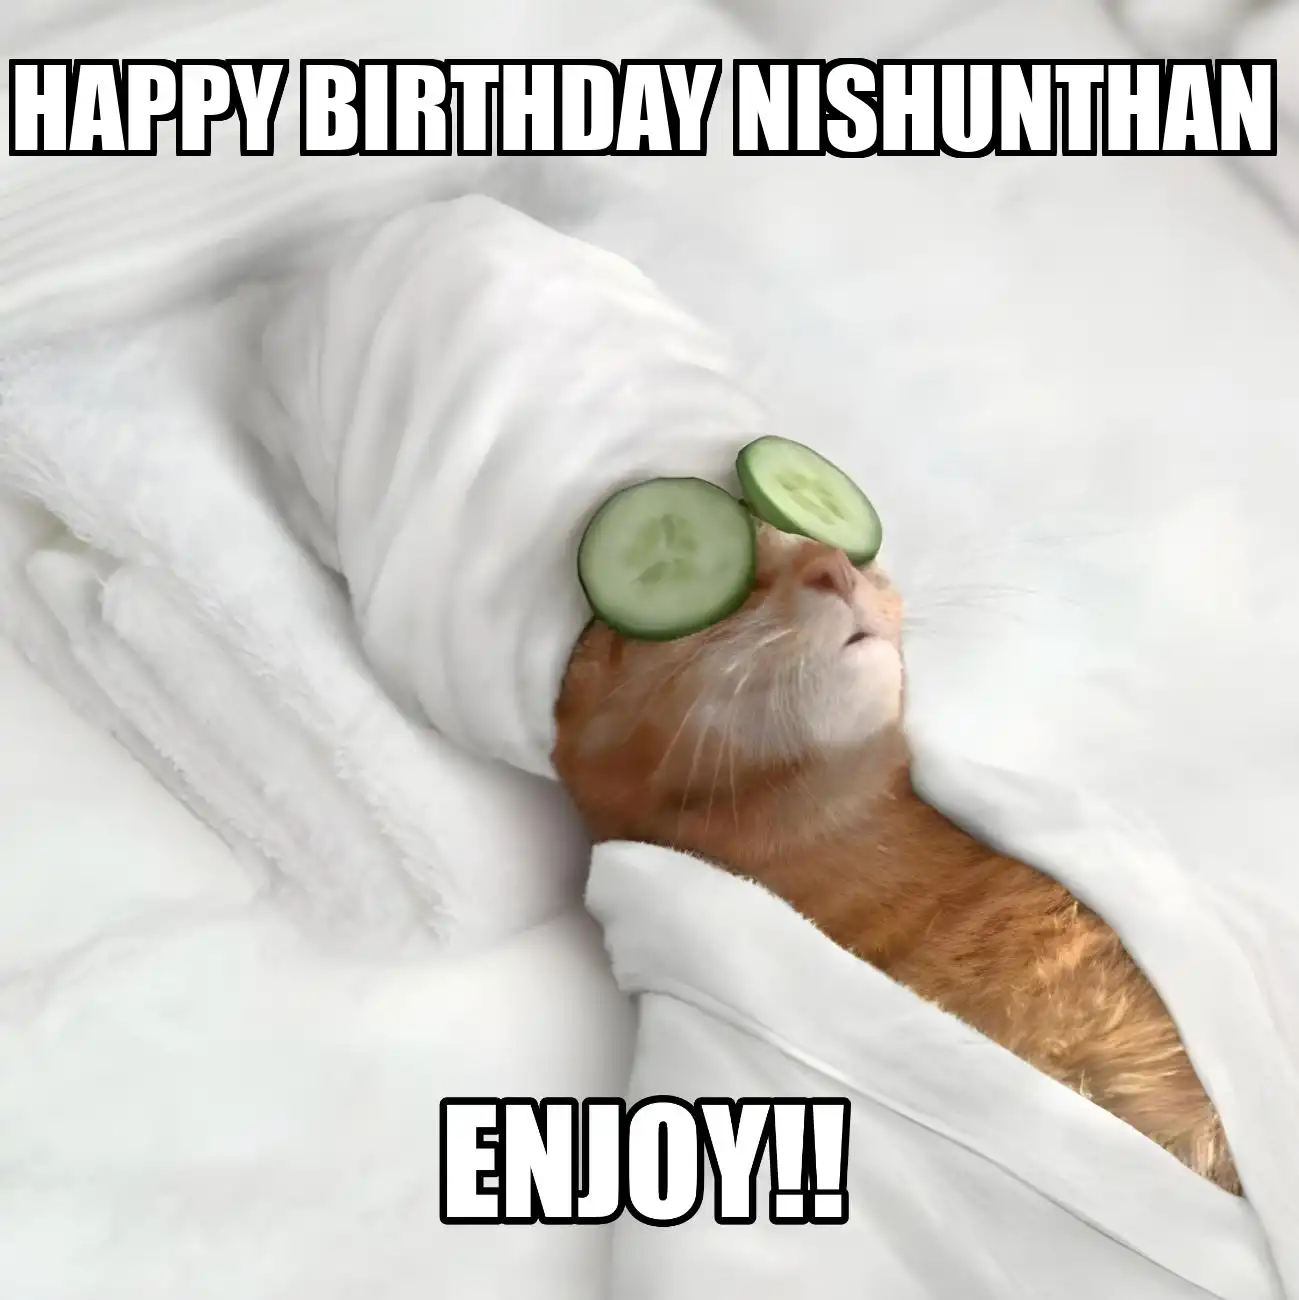 Happy Birthday Nishunthan Enjoy Cat Meme